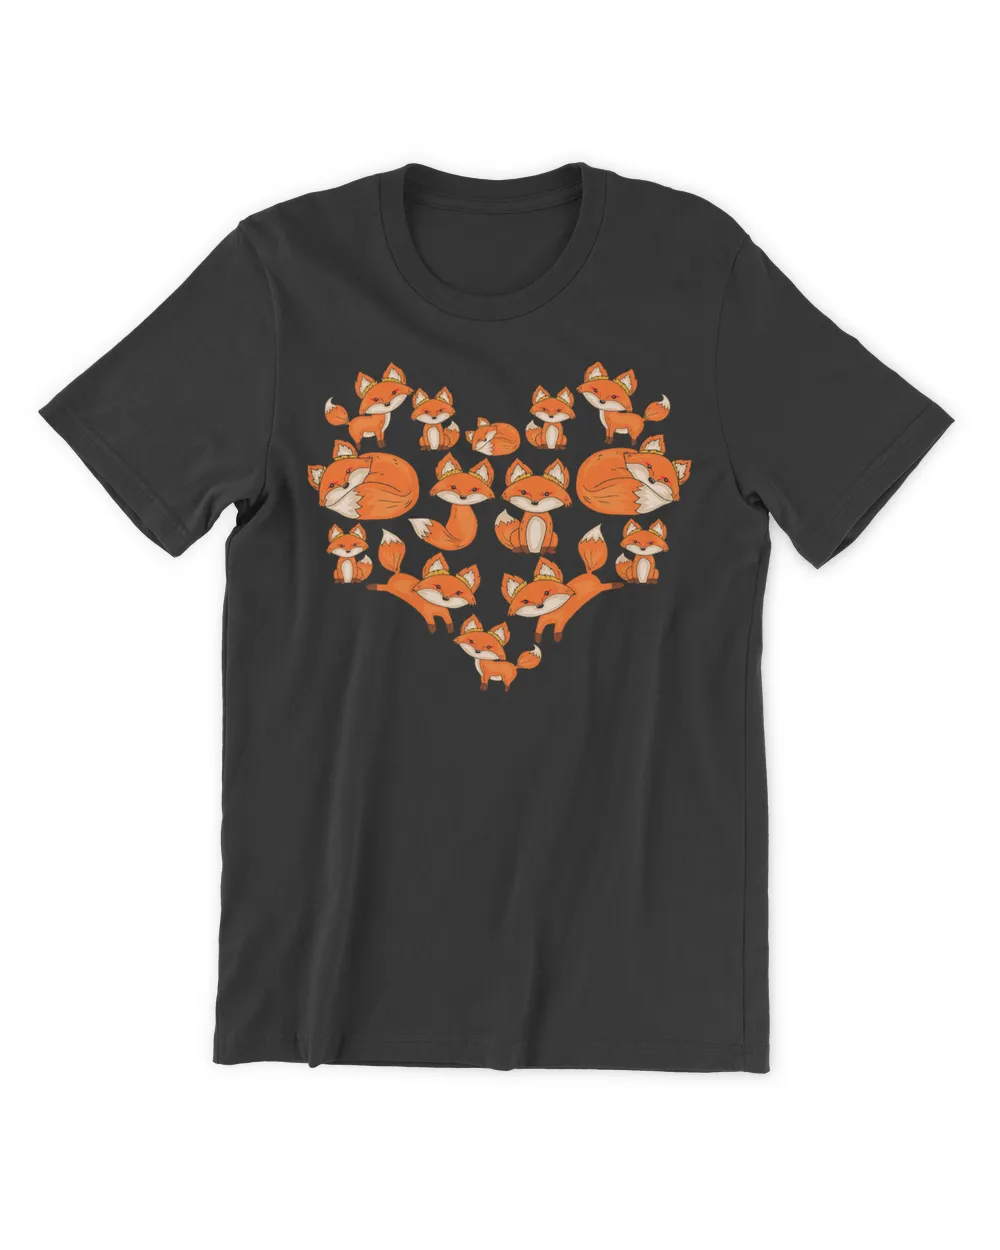 Fox Shirts For Women Girls Kids Heart Gifts Poses Cute Fox T-Shirt